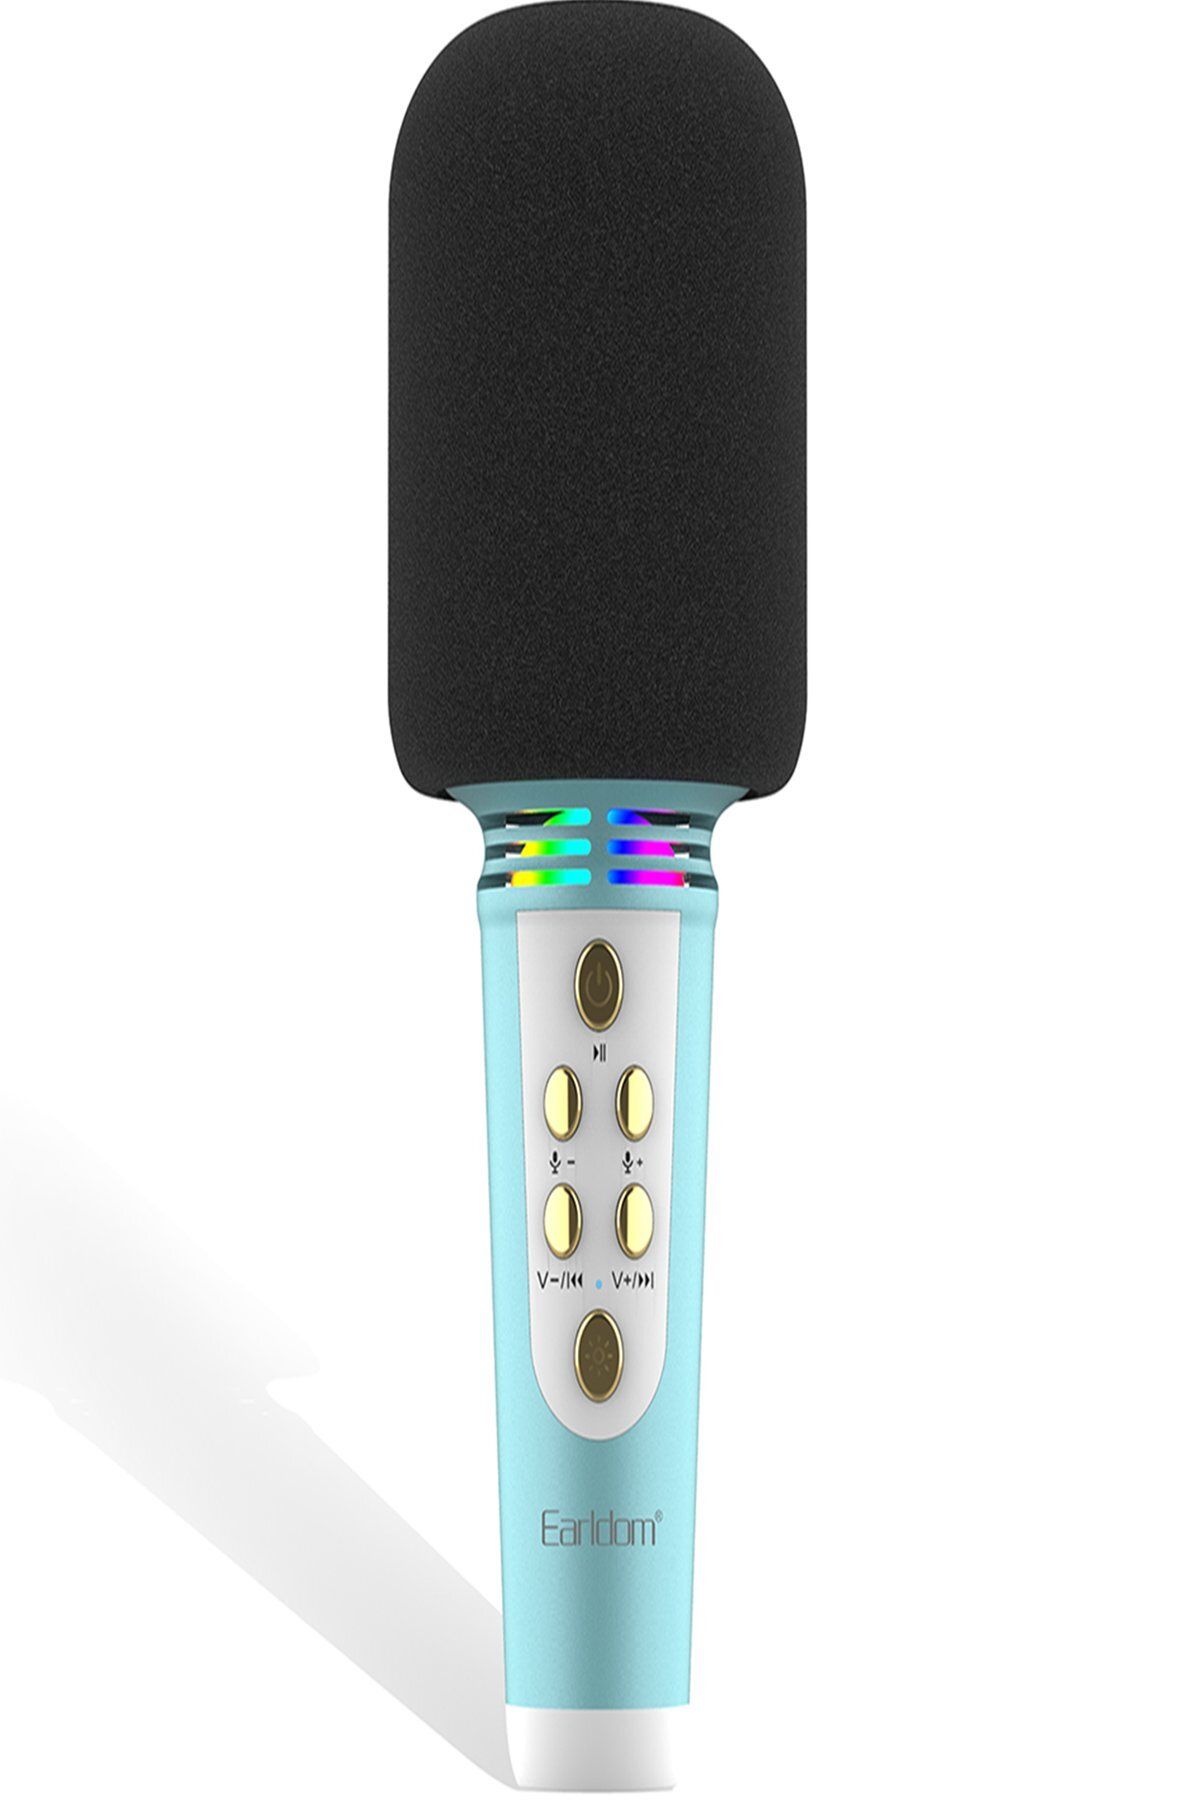 NewFace Earldom MC6 Led Işıklı Karaoke Mikrofon - Siyah 360110